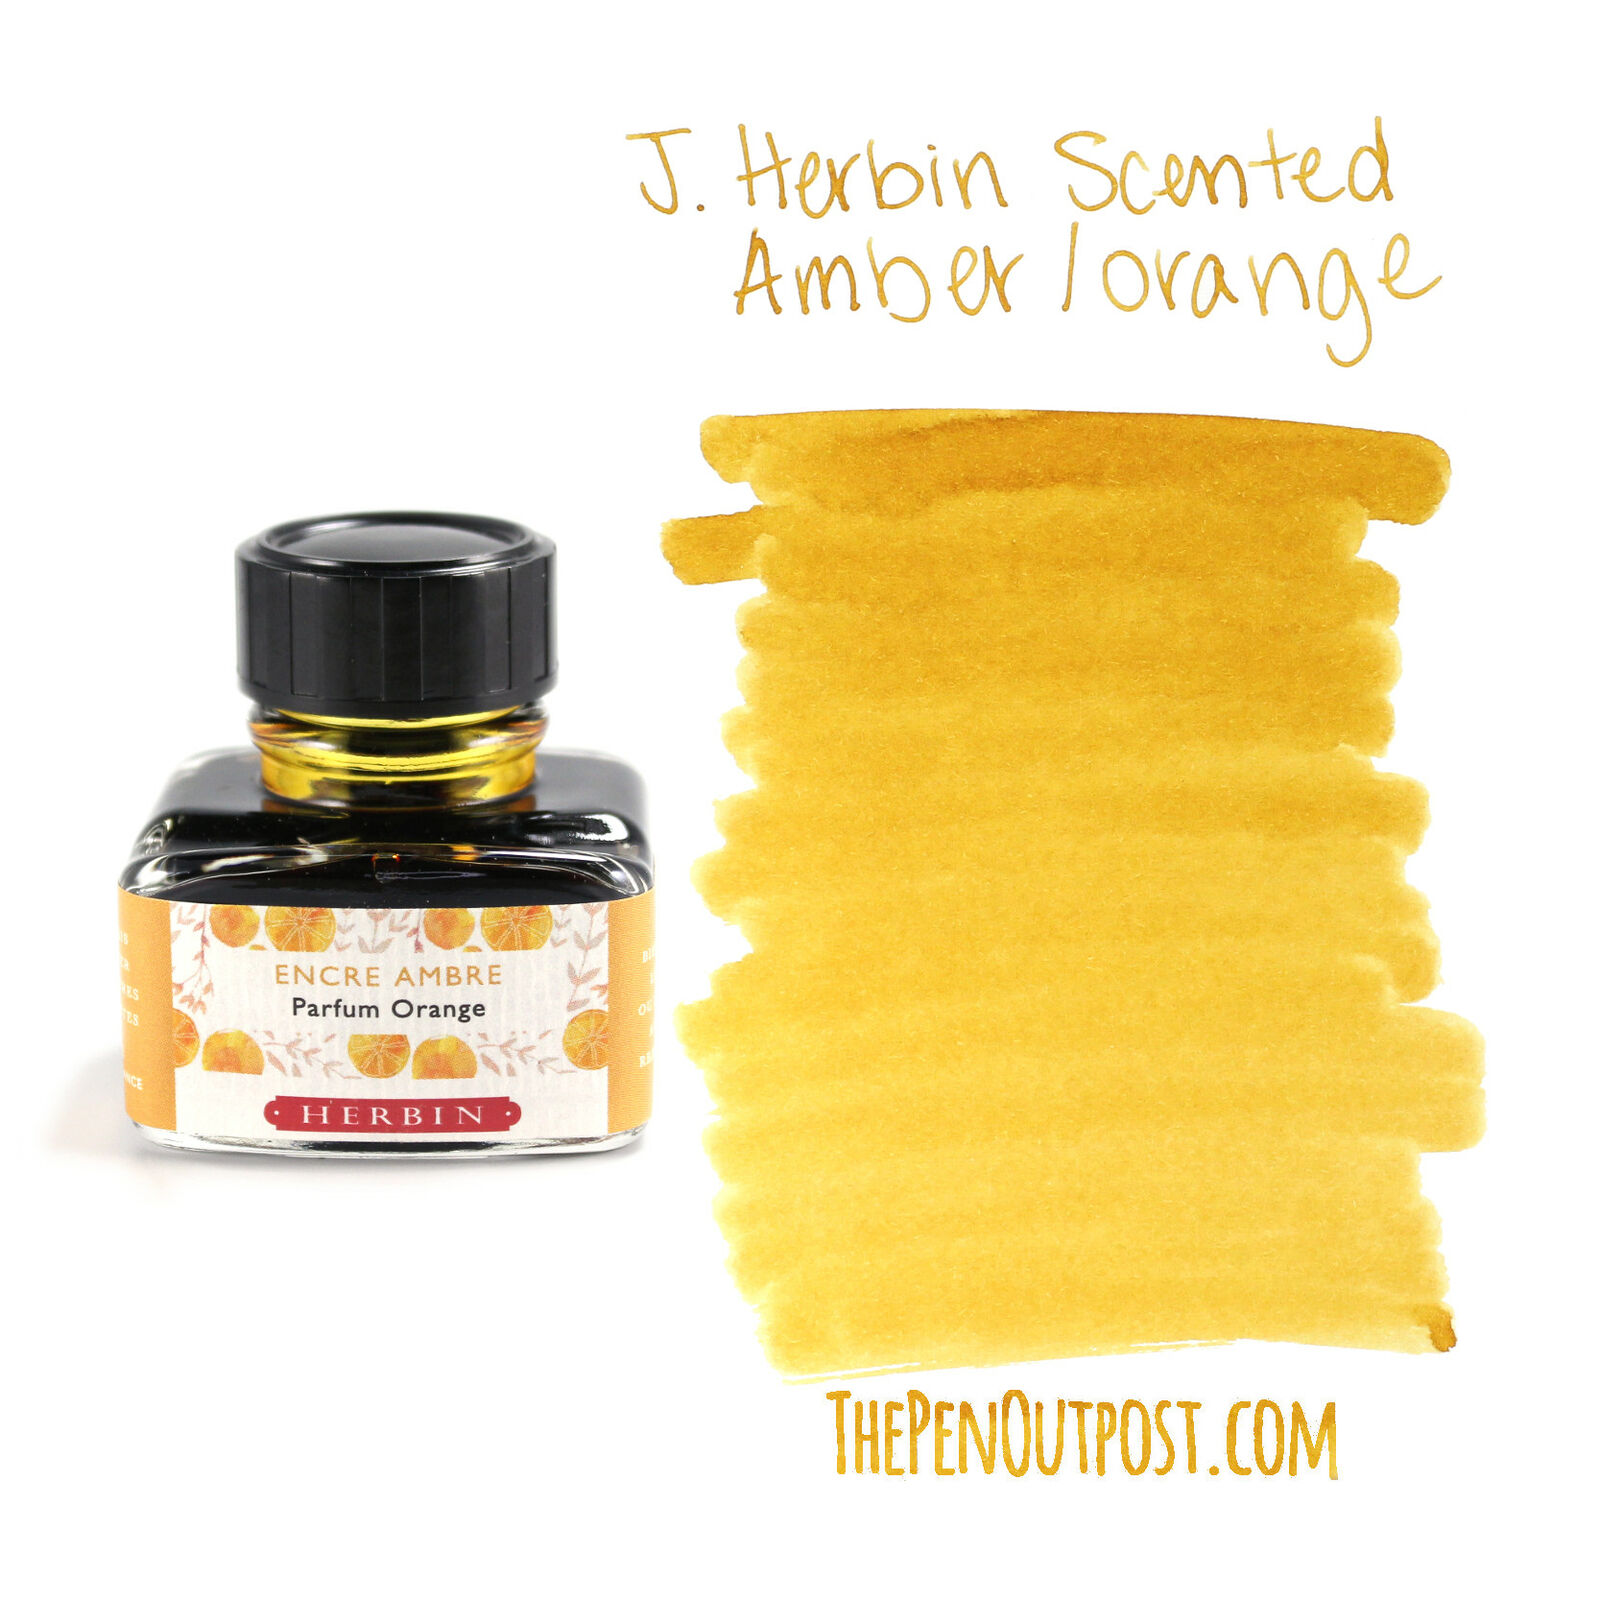 В качестве примера J.Herbin Scented Fountain Pen Ink, 30ml bottle, 
Amber/Orange. Если бы не крышечка баночки, выглядели бы, как духи. 
Источник: https://www.thepenoutpost.com/product/j-herbin-scented-fountain-pen-ink-30ml-bottle-amber-orange/